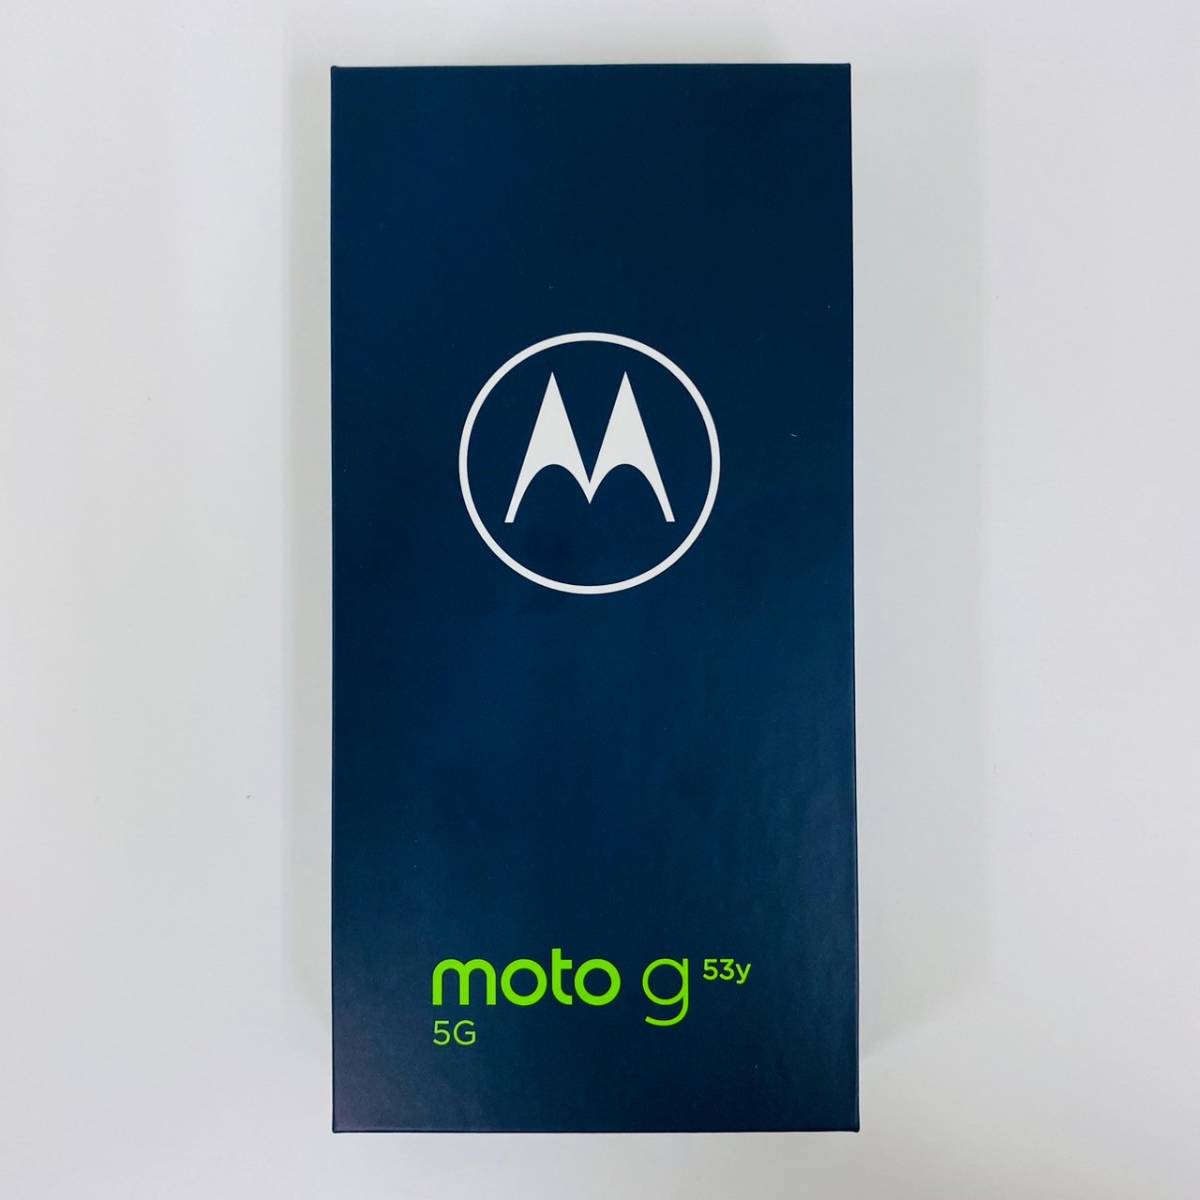 【K-25621】Motorola(モトローラ) moto g53y 5G 128GB インクブラック MOSAD1 Y!mobile スマホ Android 352304692658636 判定〇_画像6